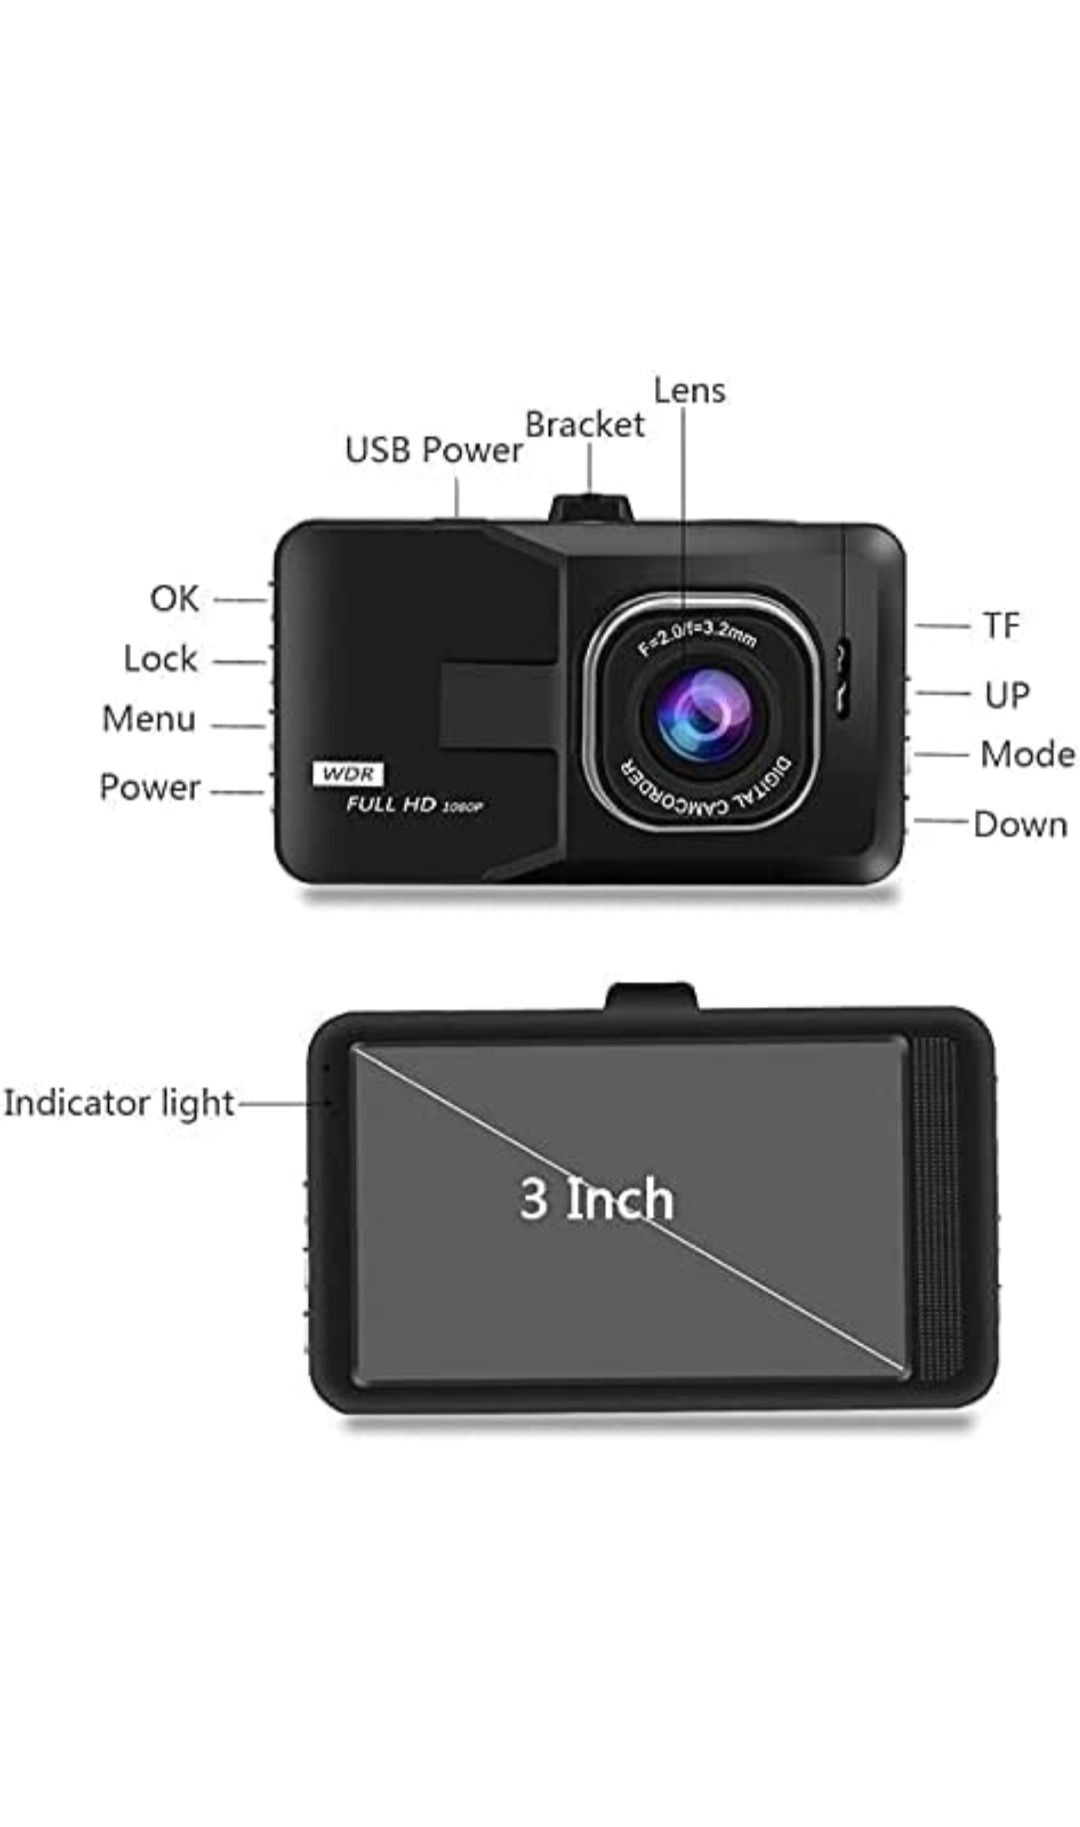 Dashcam, câmara de carro 1080p